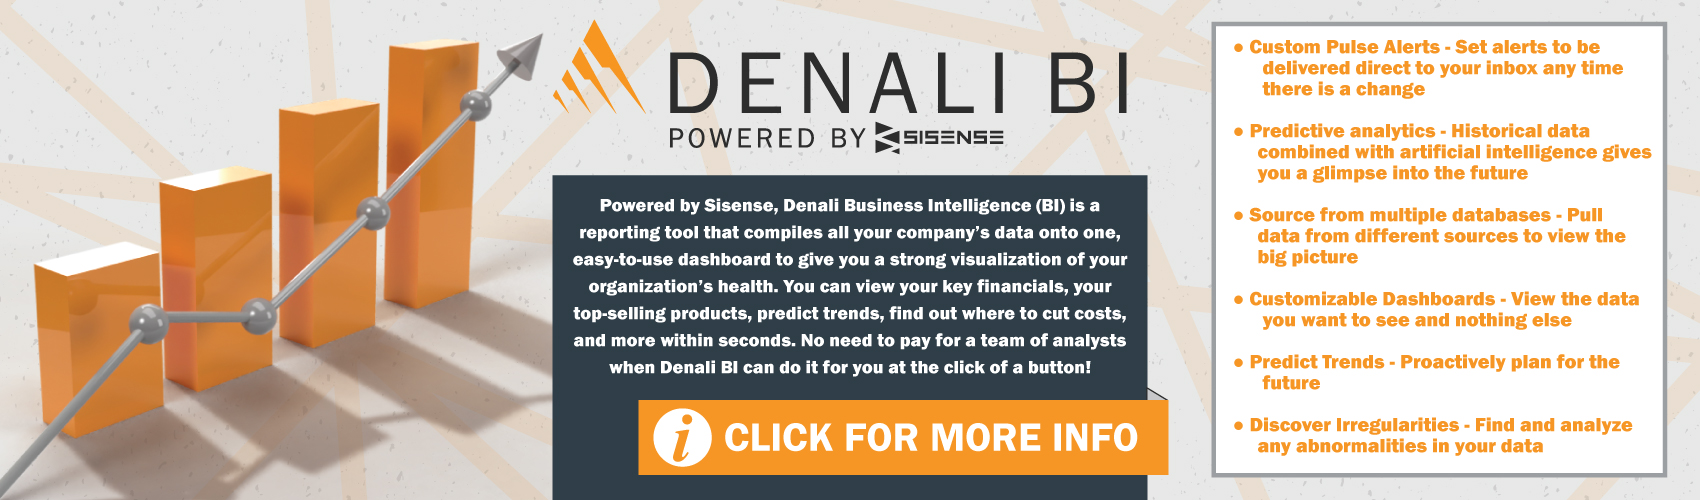 Denali Business Intelligence